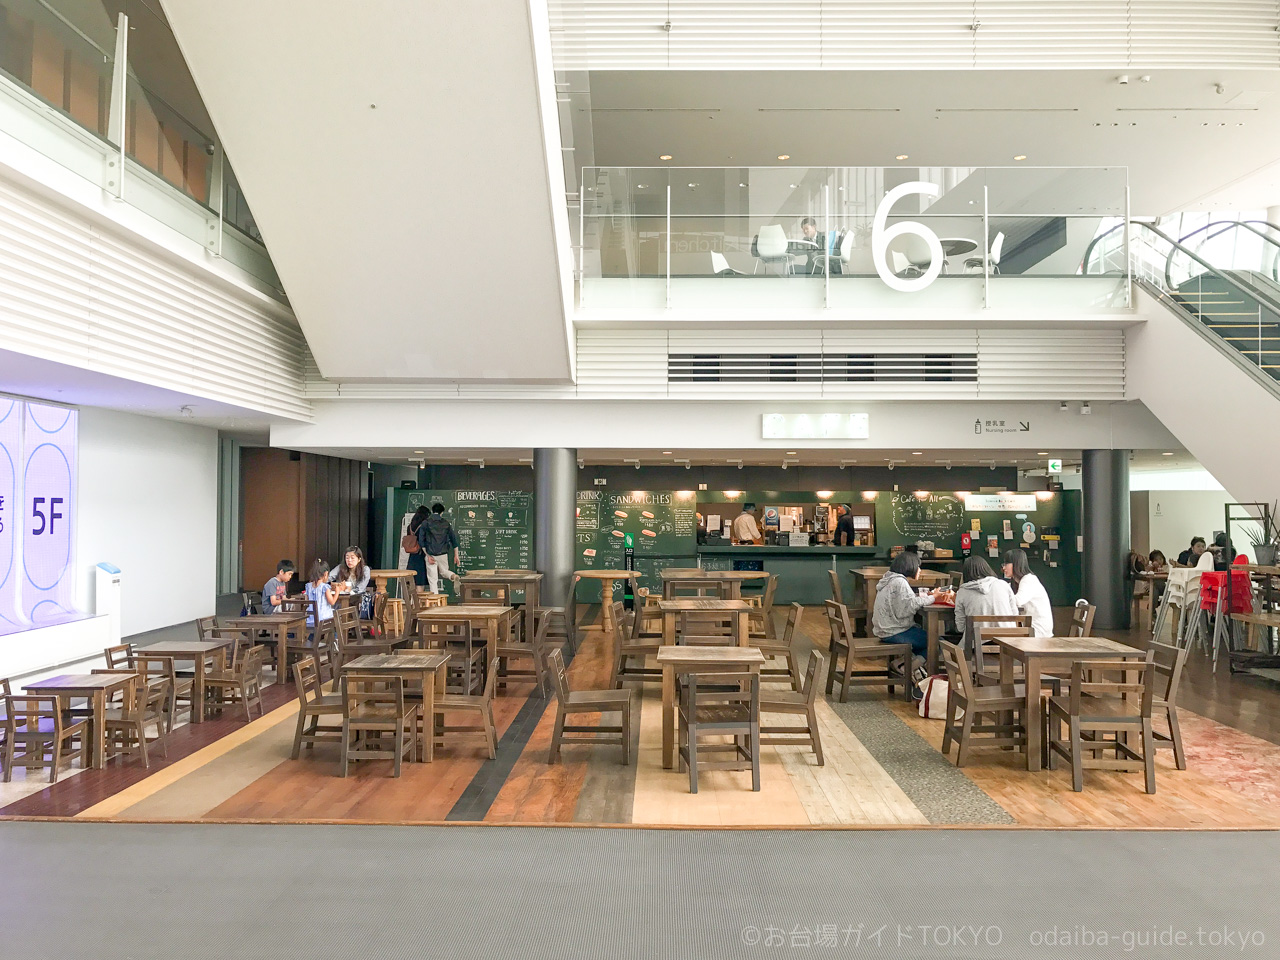 日本科学未来館のカフェ Miraikan Cafe がリニューアルへ 7 4 お台場ガイドtokyo